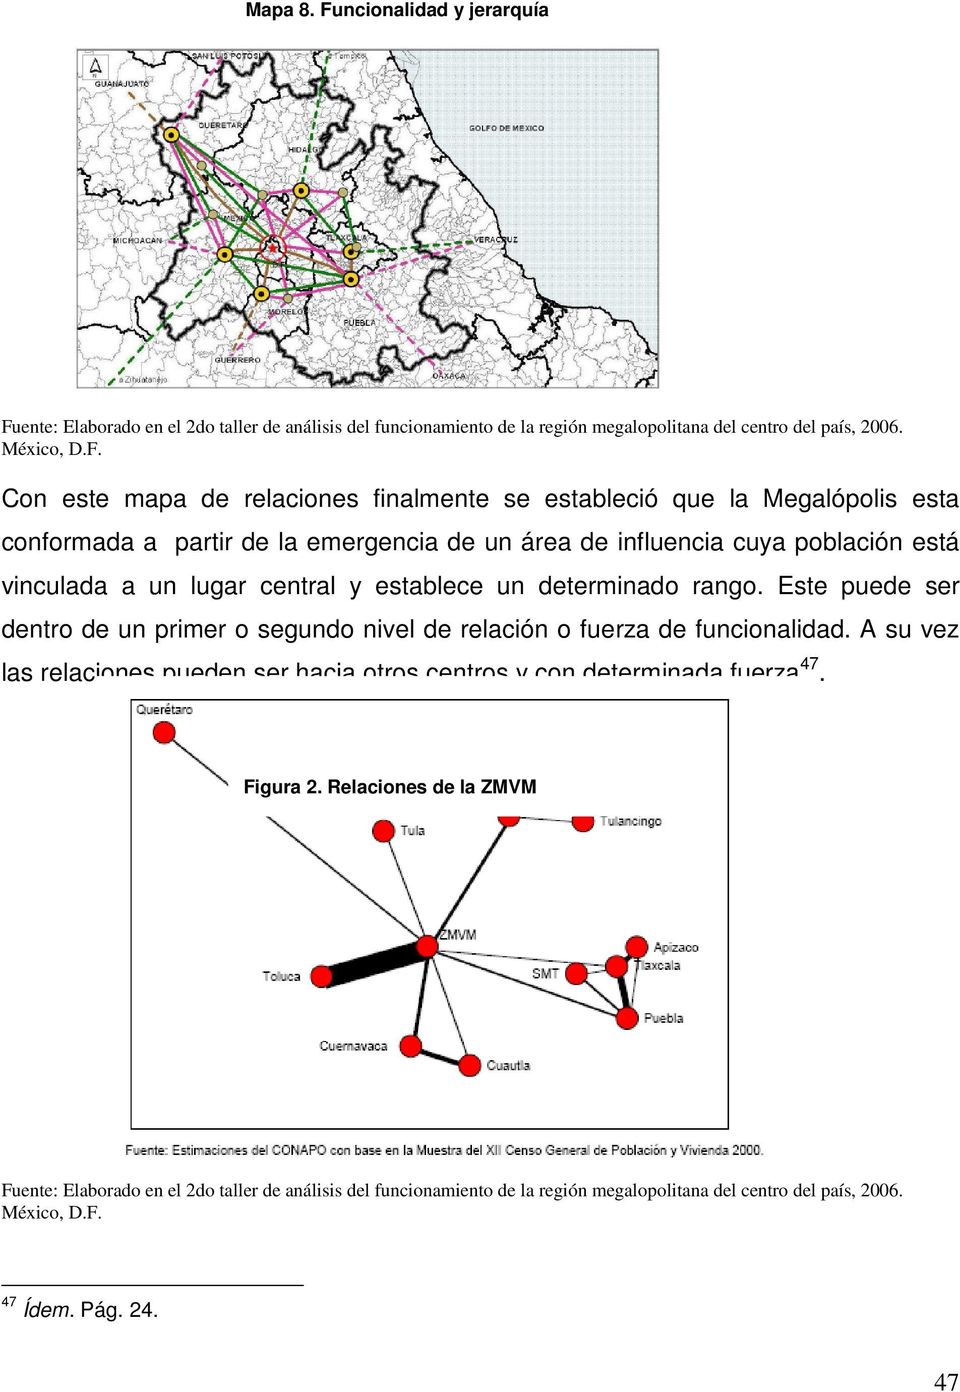 ente: Elaborado en el 2do taller de análisis del funcionamiento de la región megalopolitana del centro del país, 2006. México, D.F.